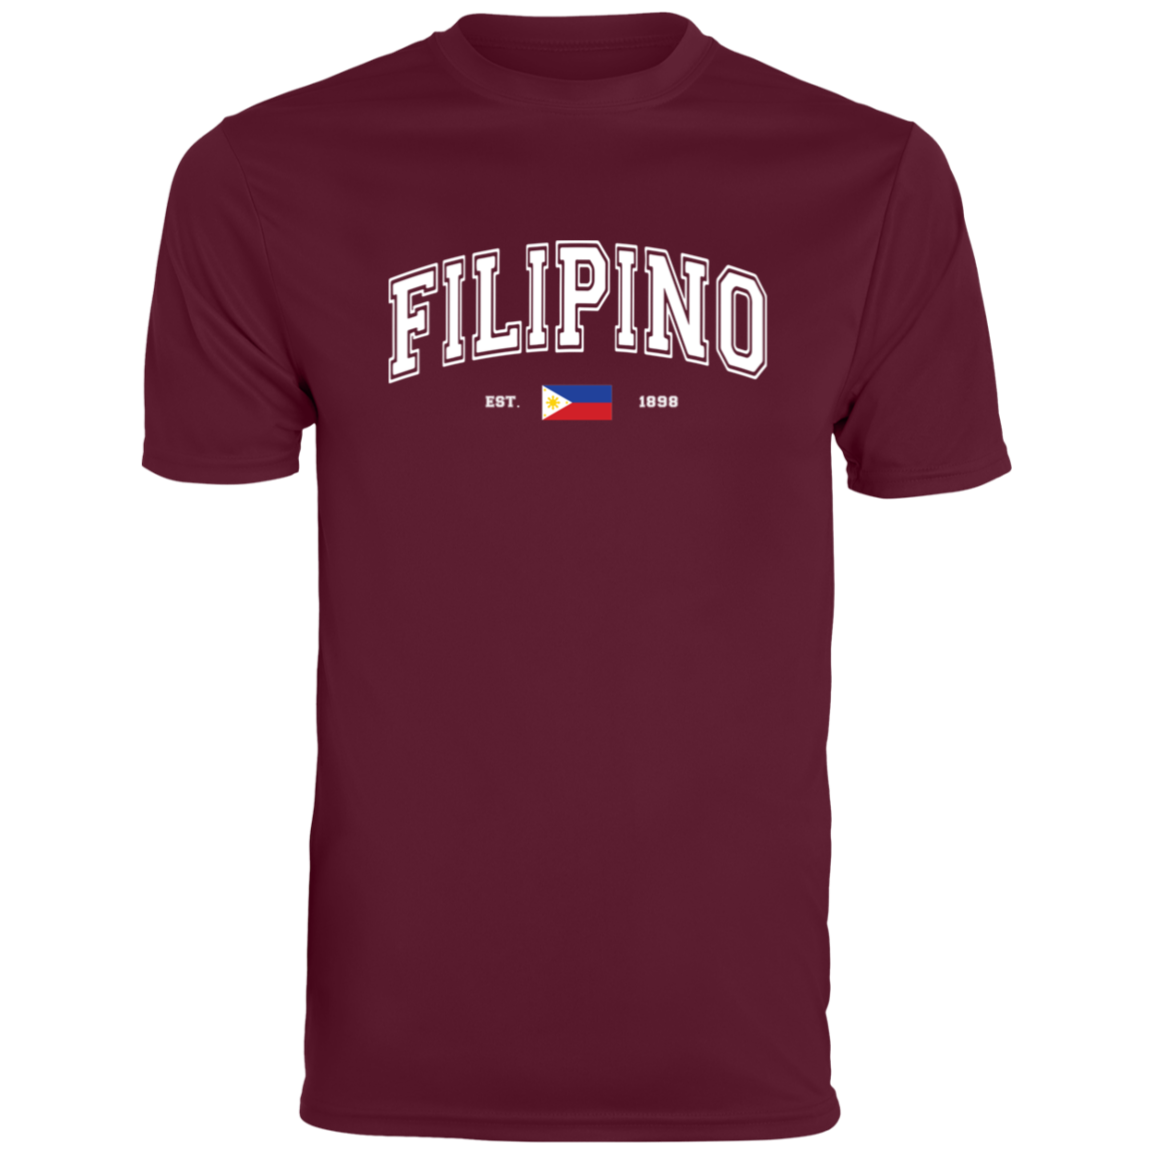 Filipino Est 1898 Moisture-Absorbing Shirt